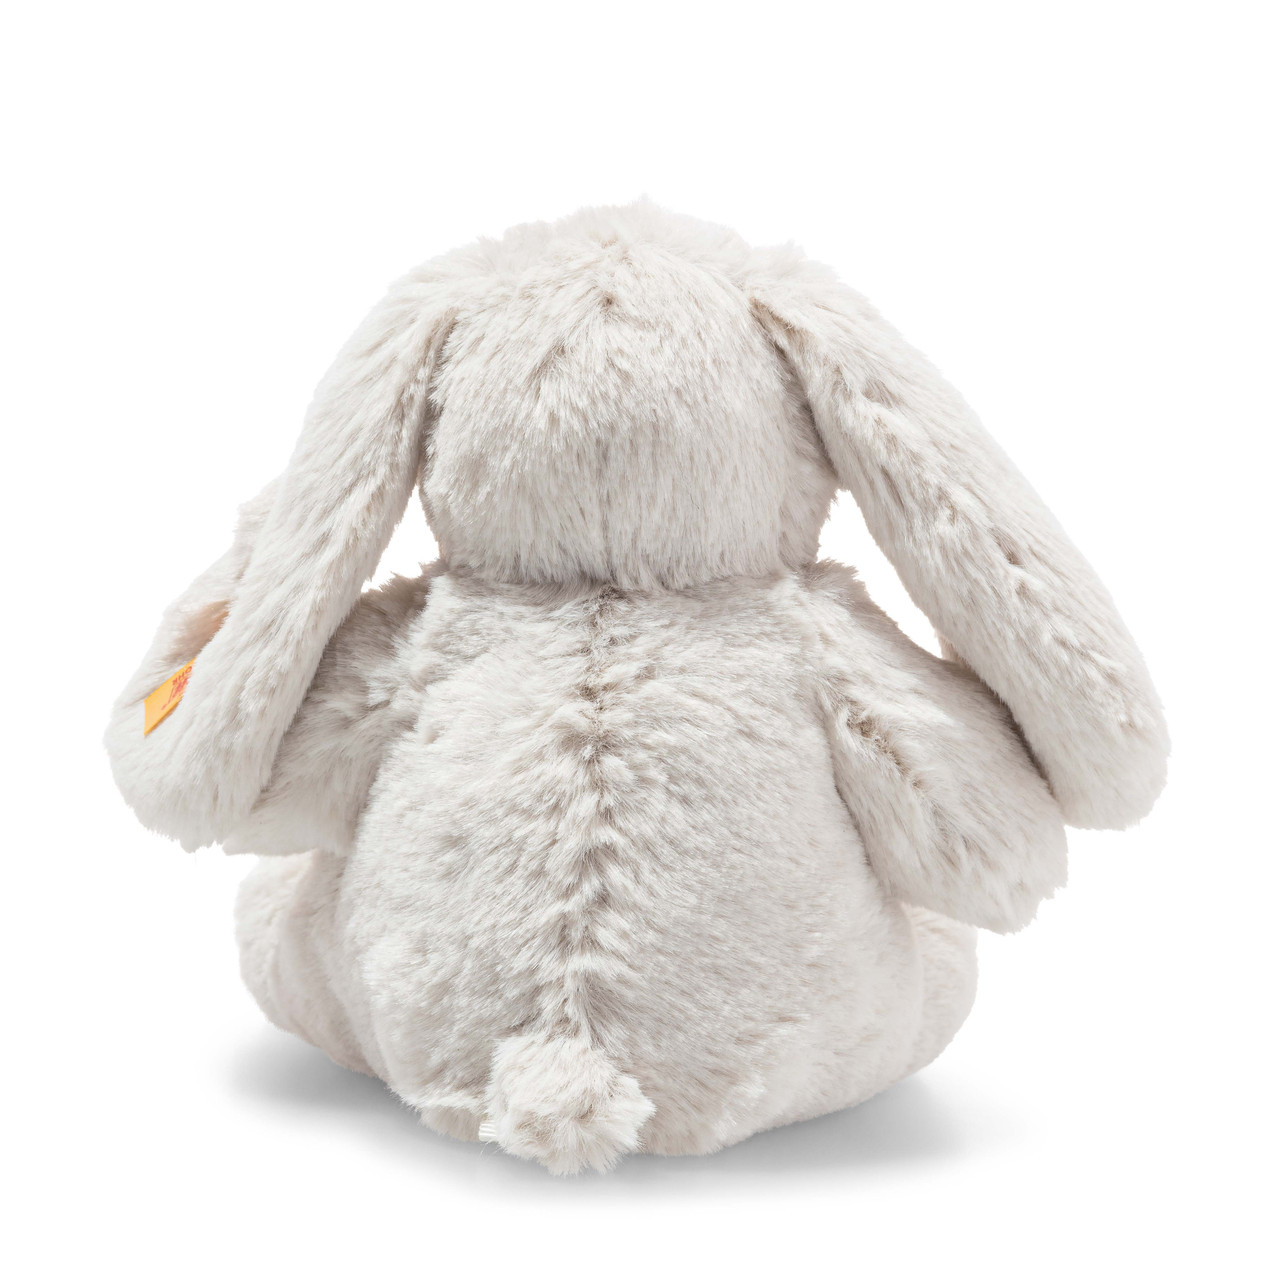 Steiff Hoppie The Rabbit 6 Inch Plush Figure NEW IN STOCK 